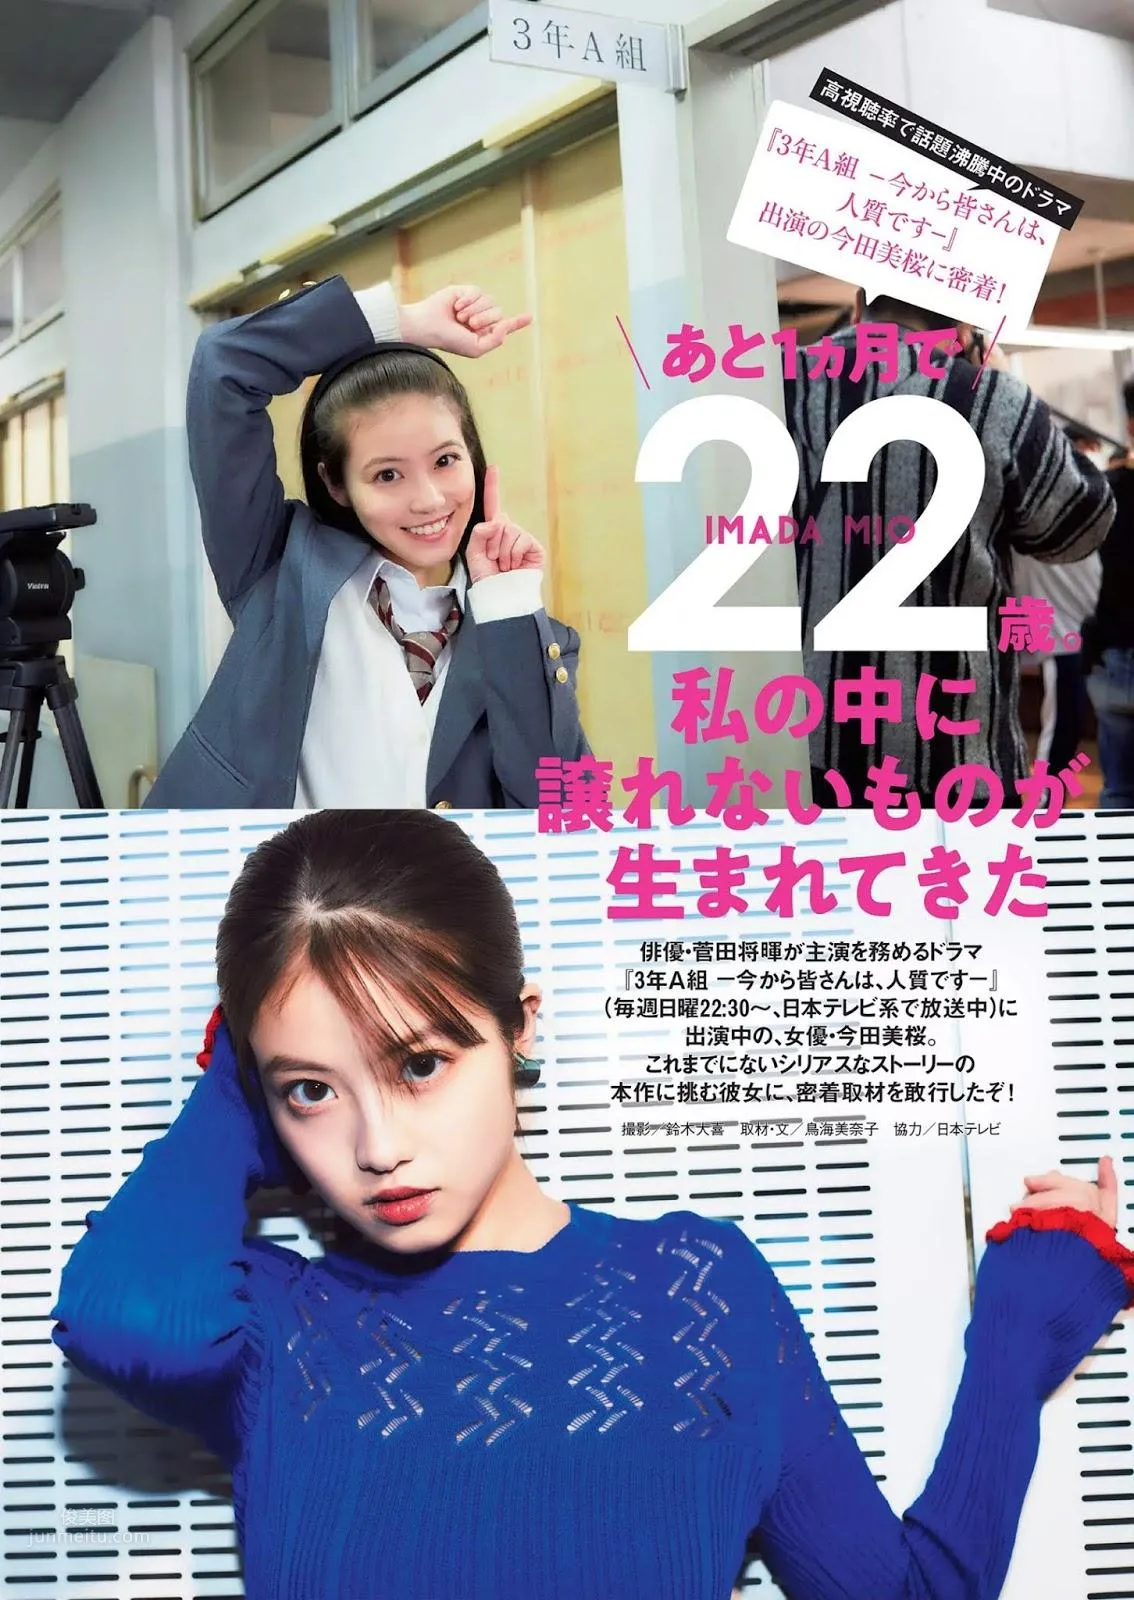 今田美桜, Imada Mio - Weekly Playboy, FLASH, FRIDAY, 2019_0